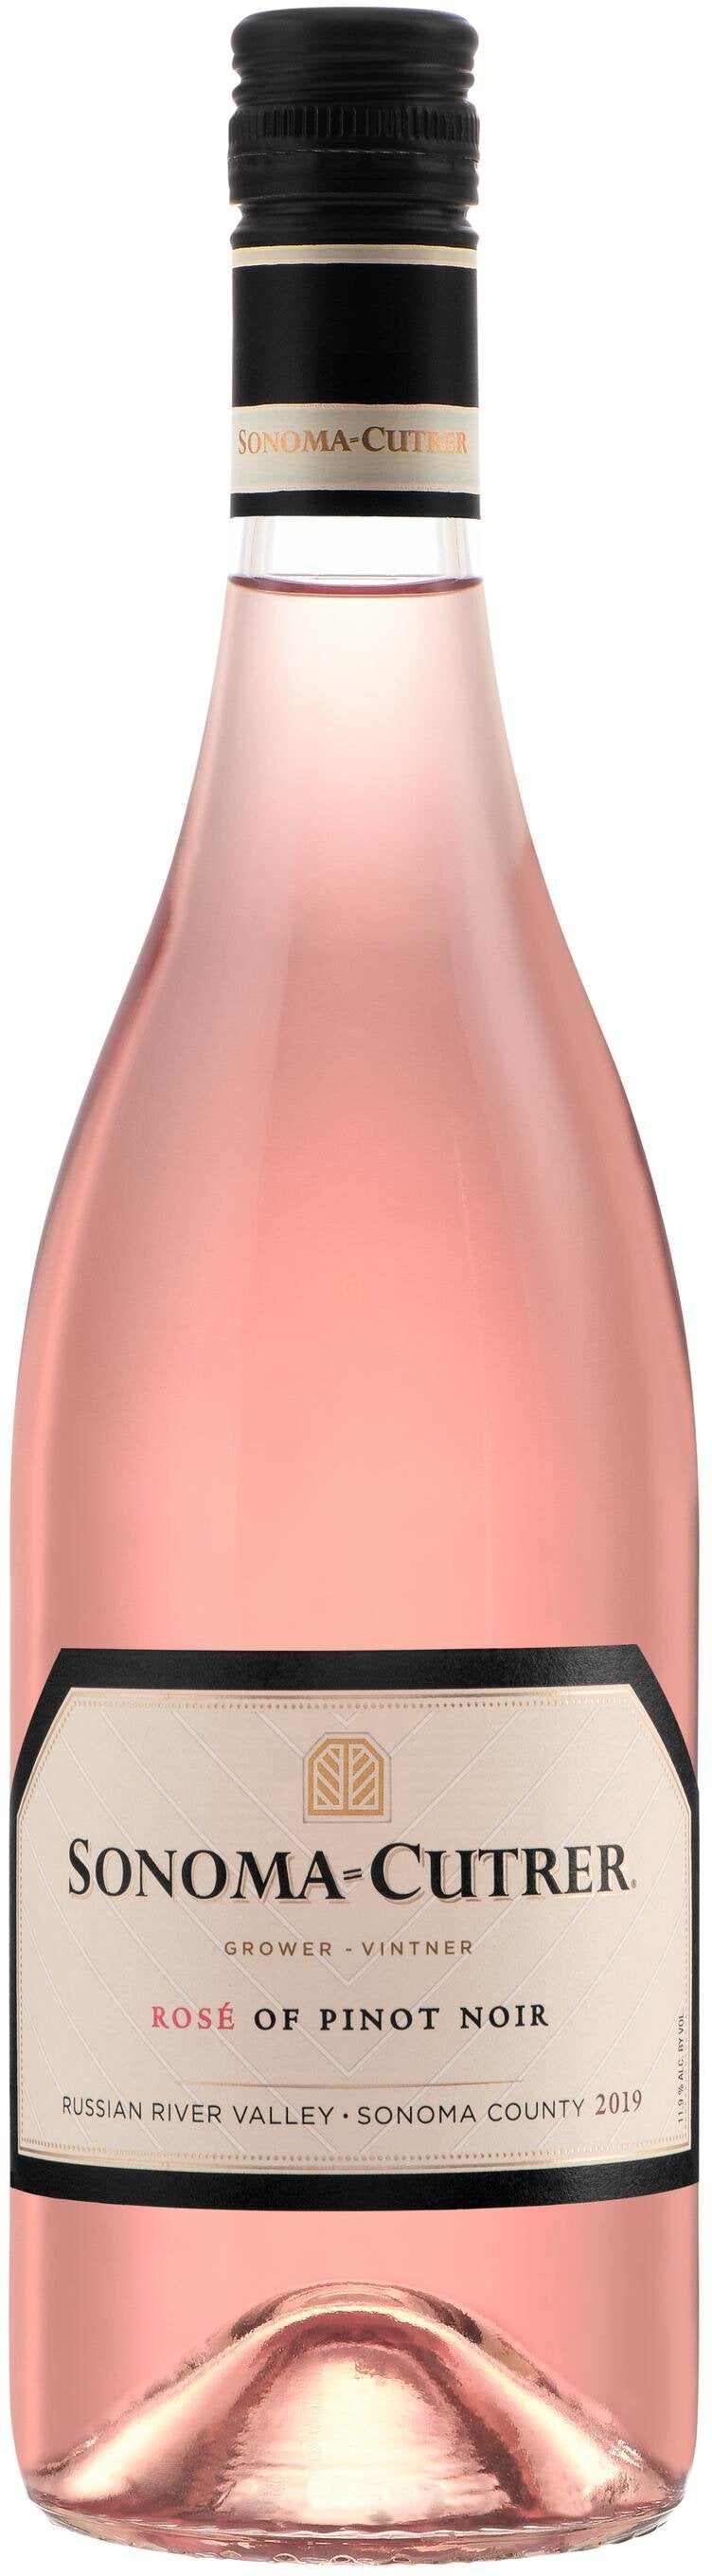 Sonoma-Cutrer Rosé Of Pinot Noir